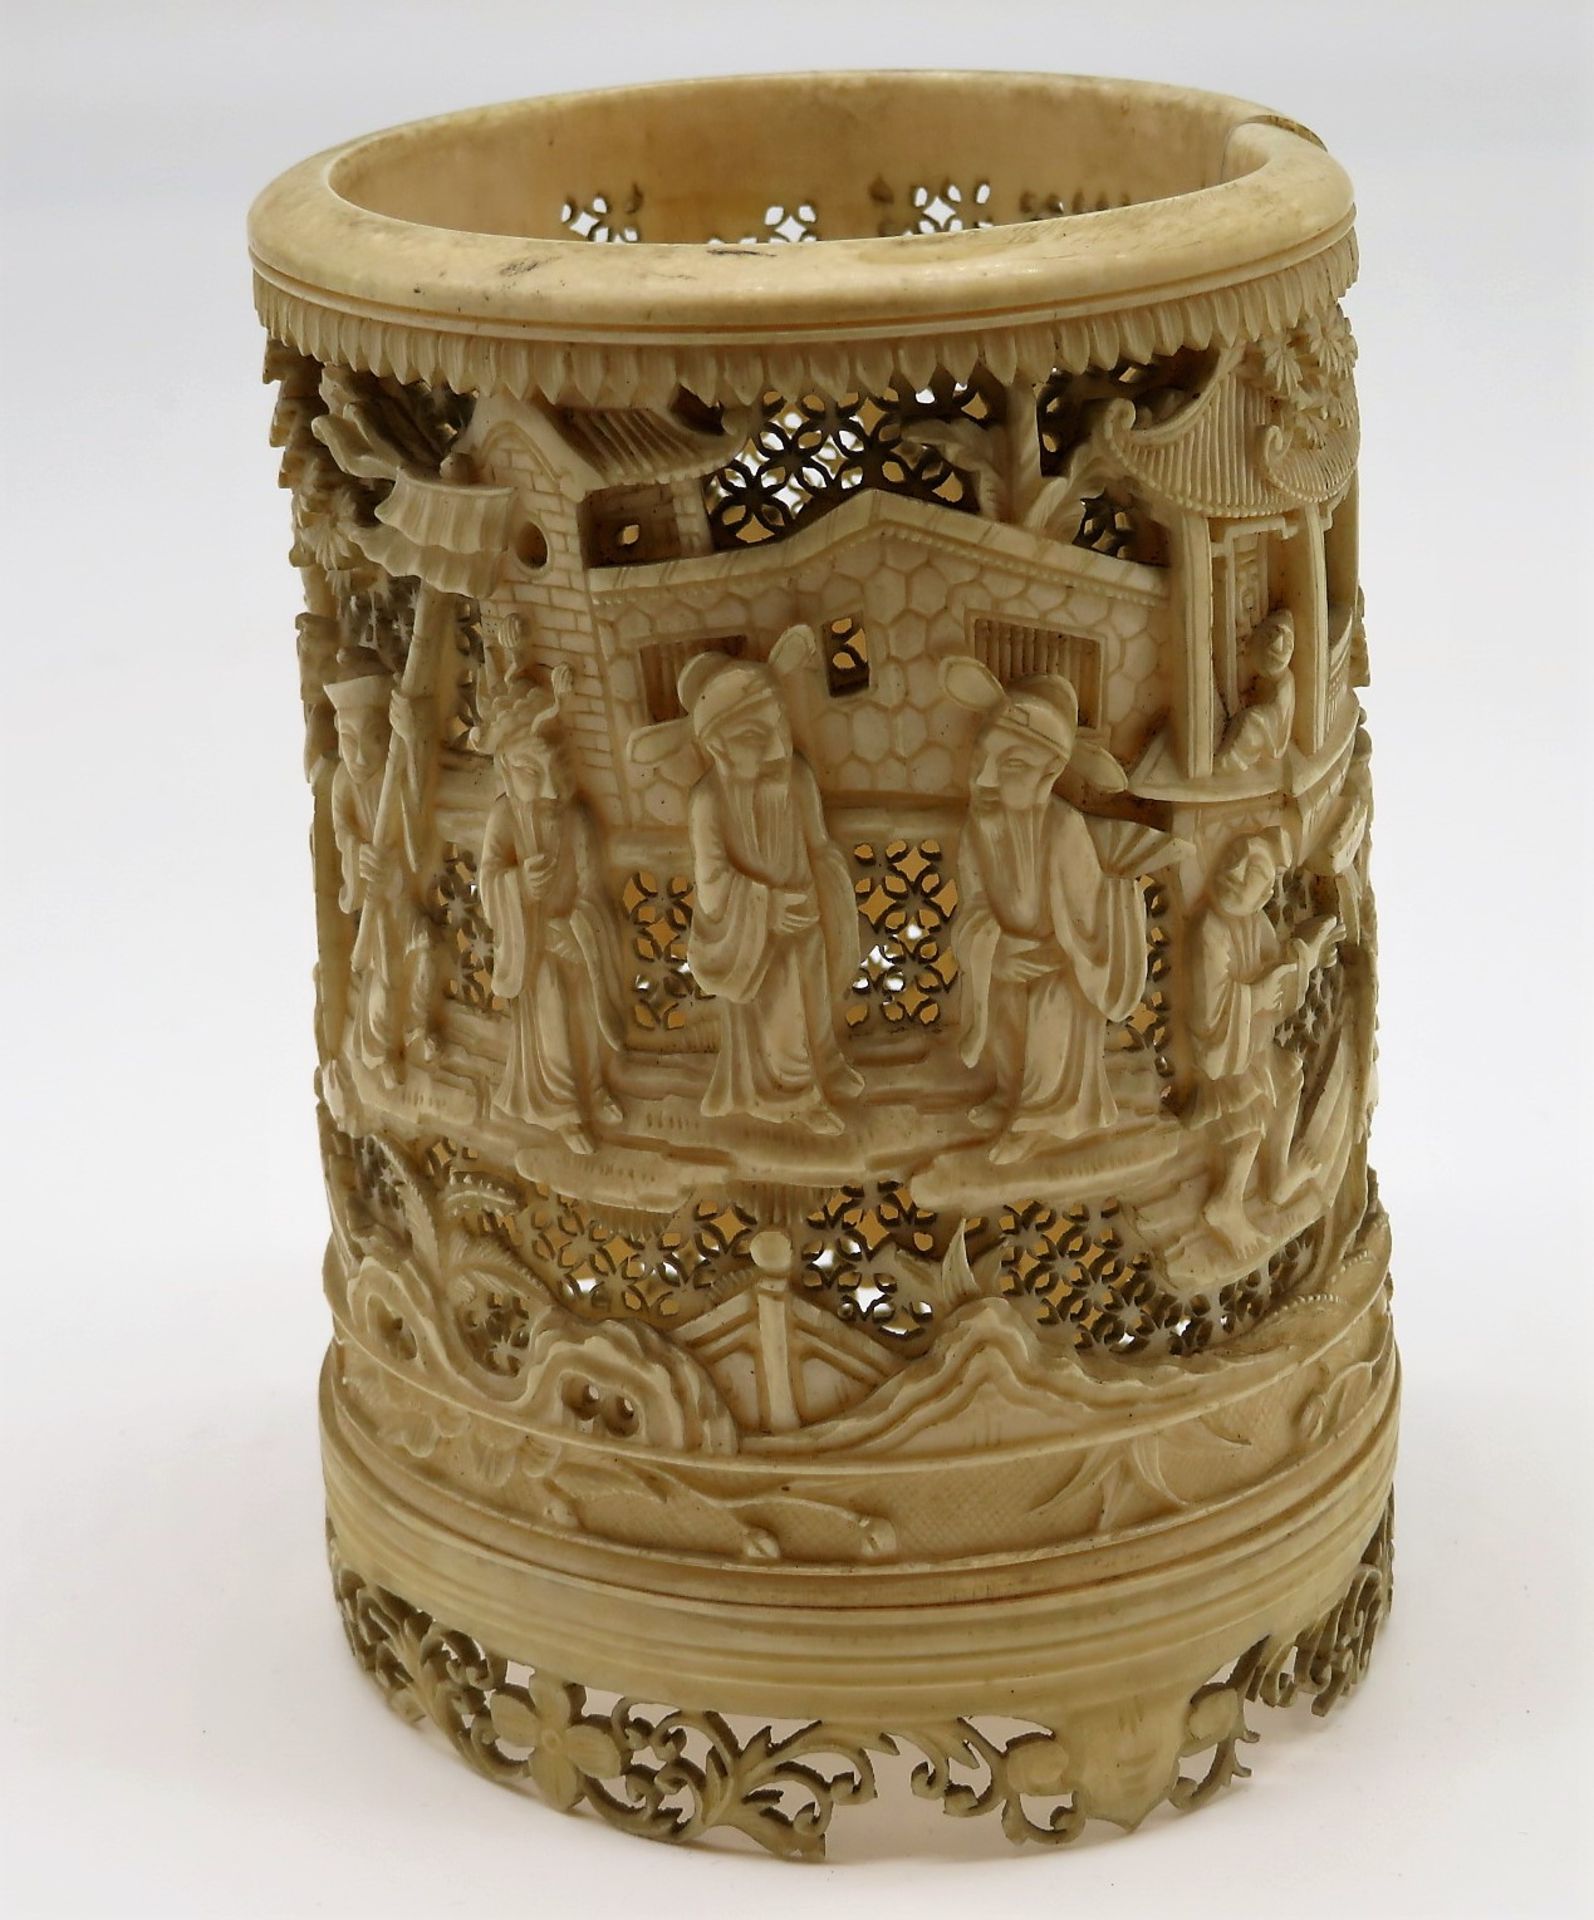 Vase, China, 19. Jahrhundert, Elfenbein fein geschnitzt, durchbrochen gearbeitet, 3 Besch., Boden f - Image 3 of 3